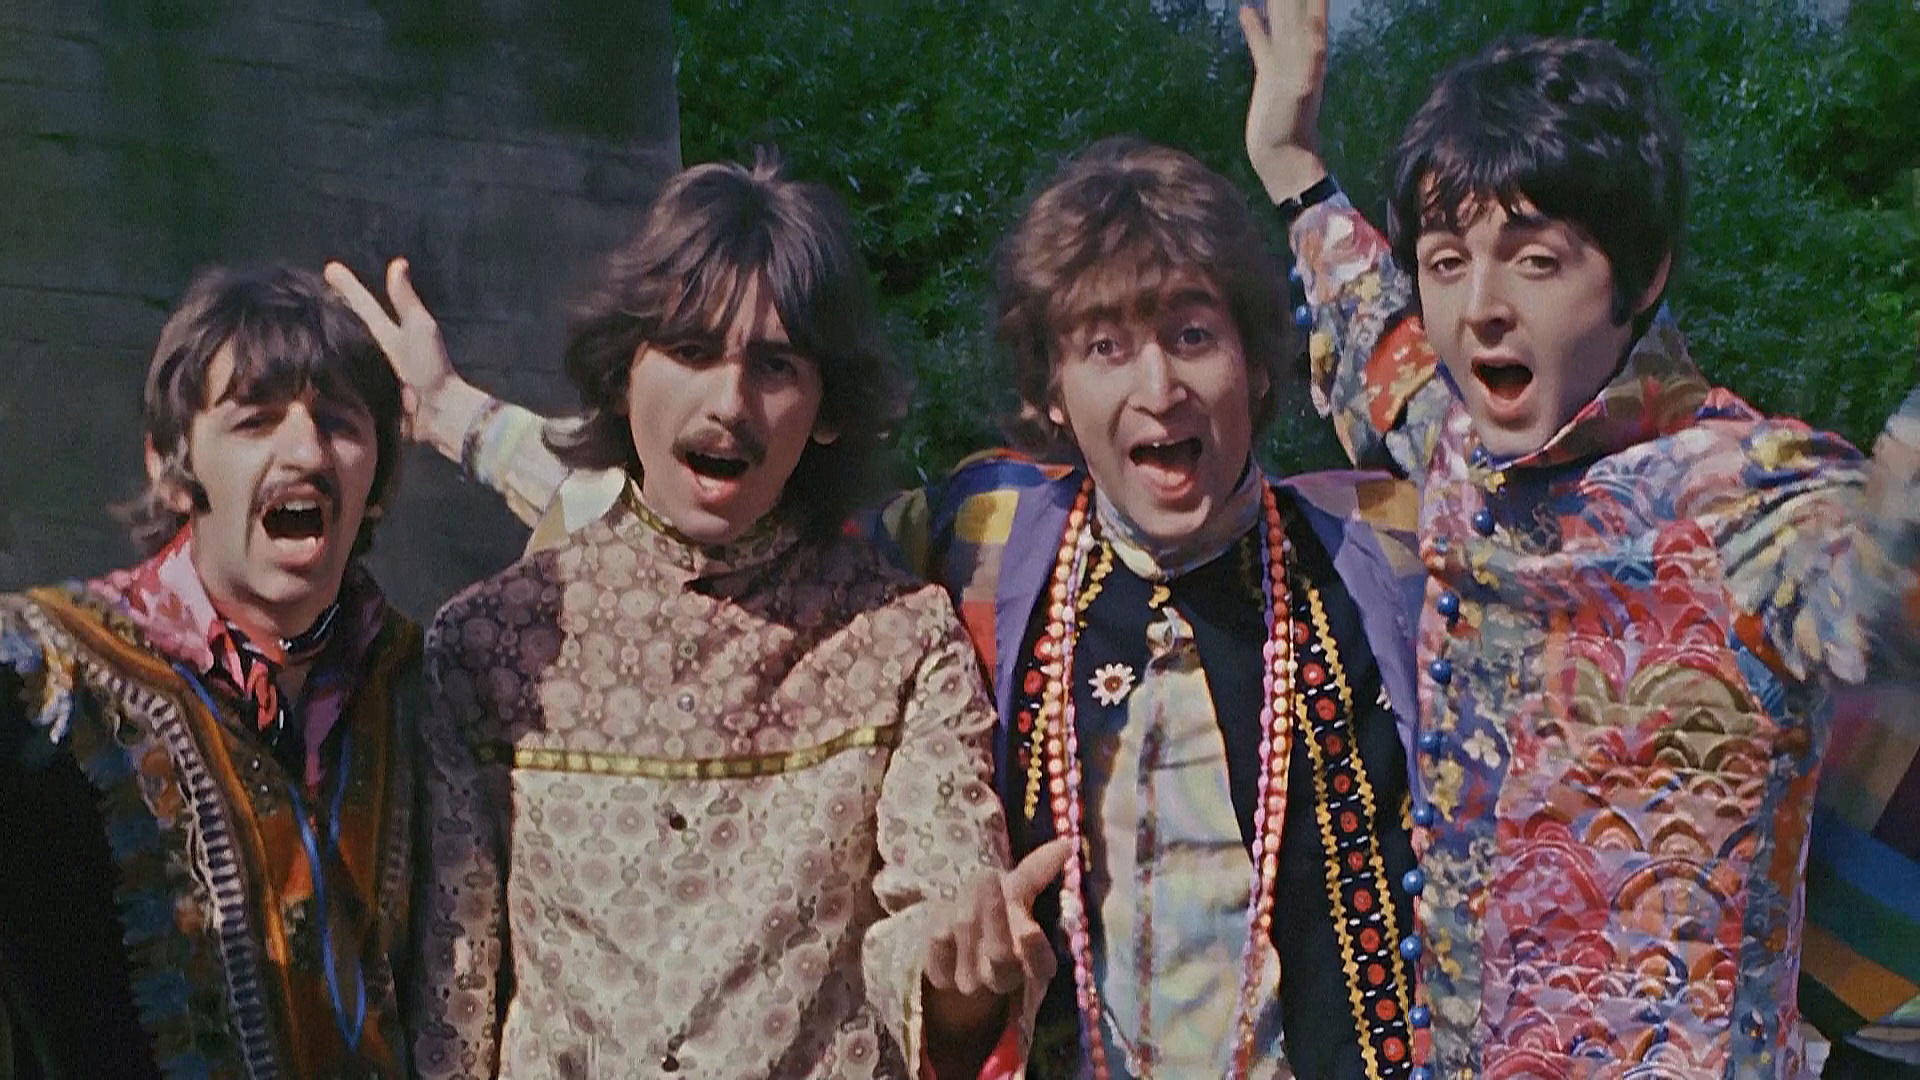 Beatles выпустит старую песню с голосом Леннона благодаря ИИ